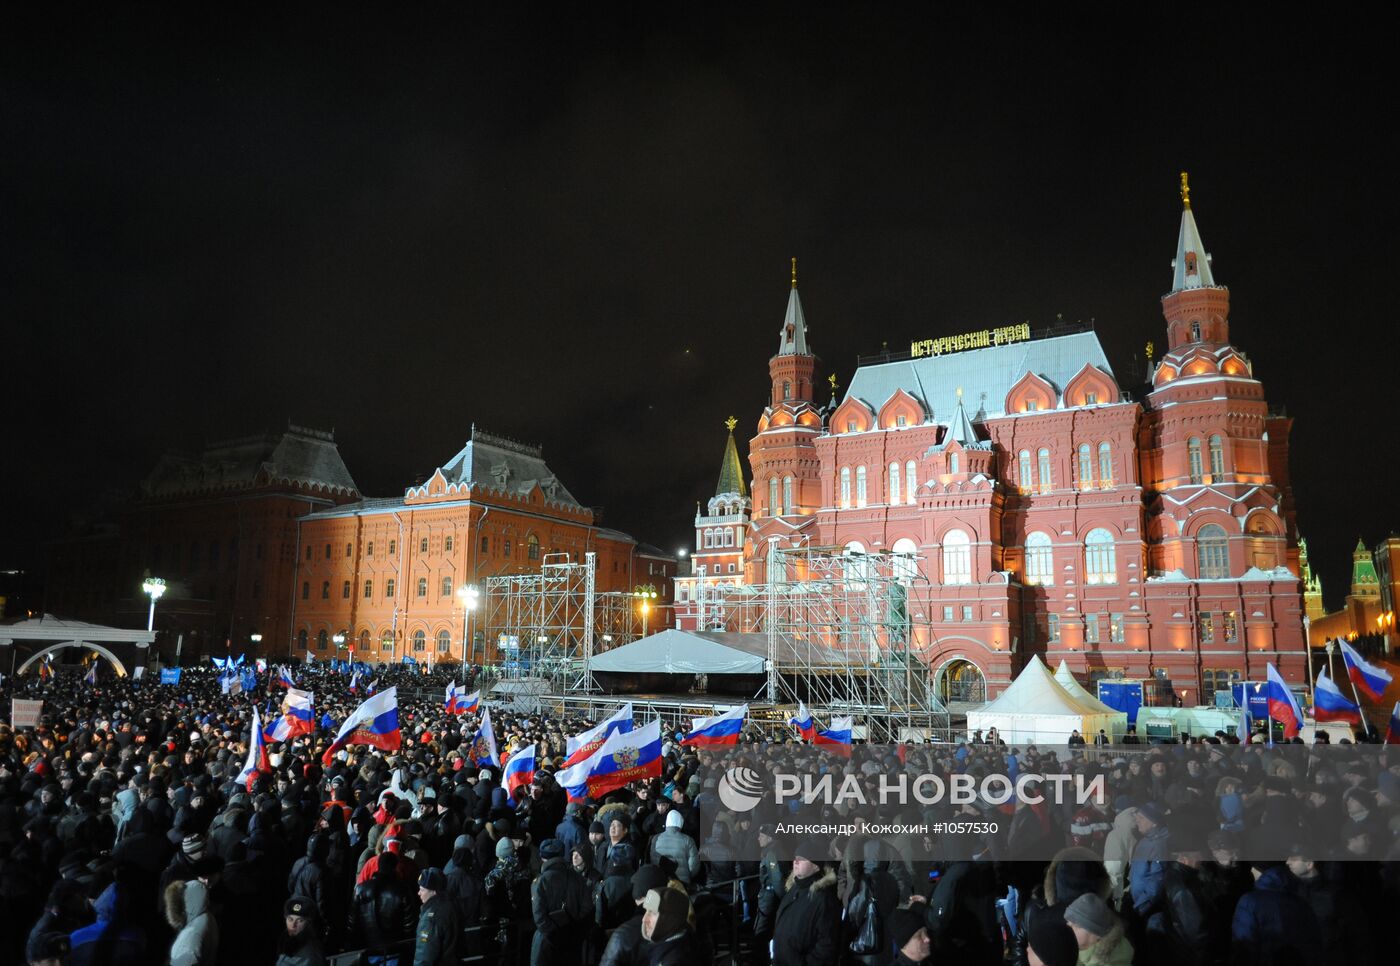 Митинг в поддержку В.Путина на Манежной площади